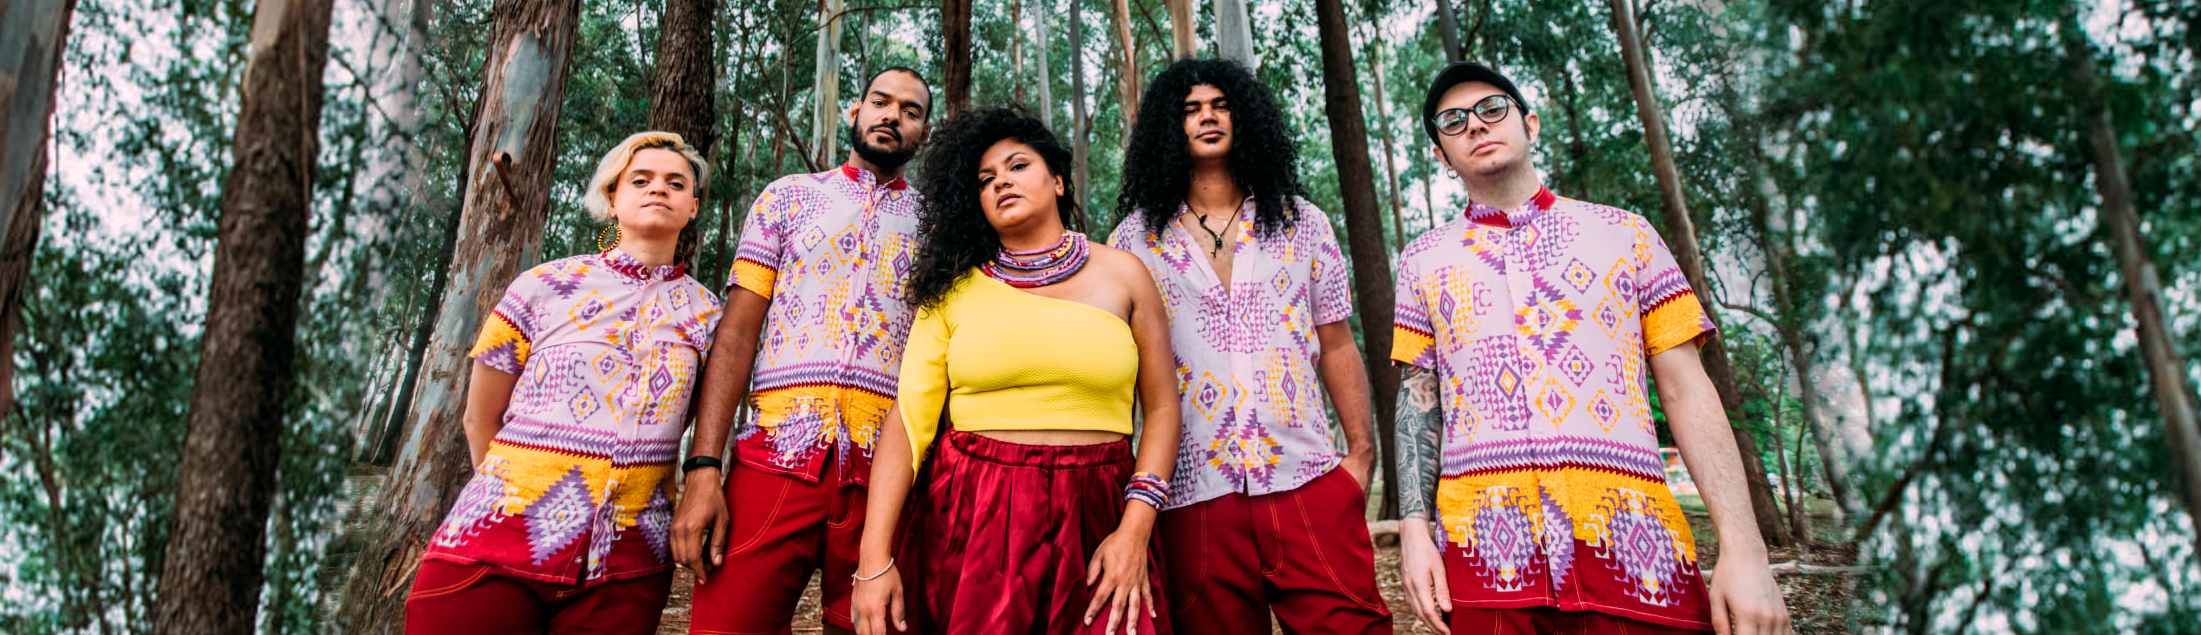 Haynna e Os Verdes celebra 2 anos de álbum e lança clipe para a música 'No Canto'